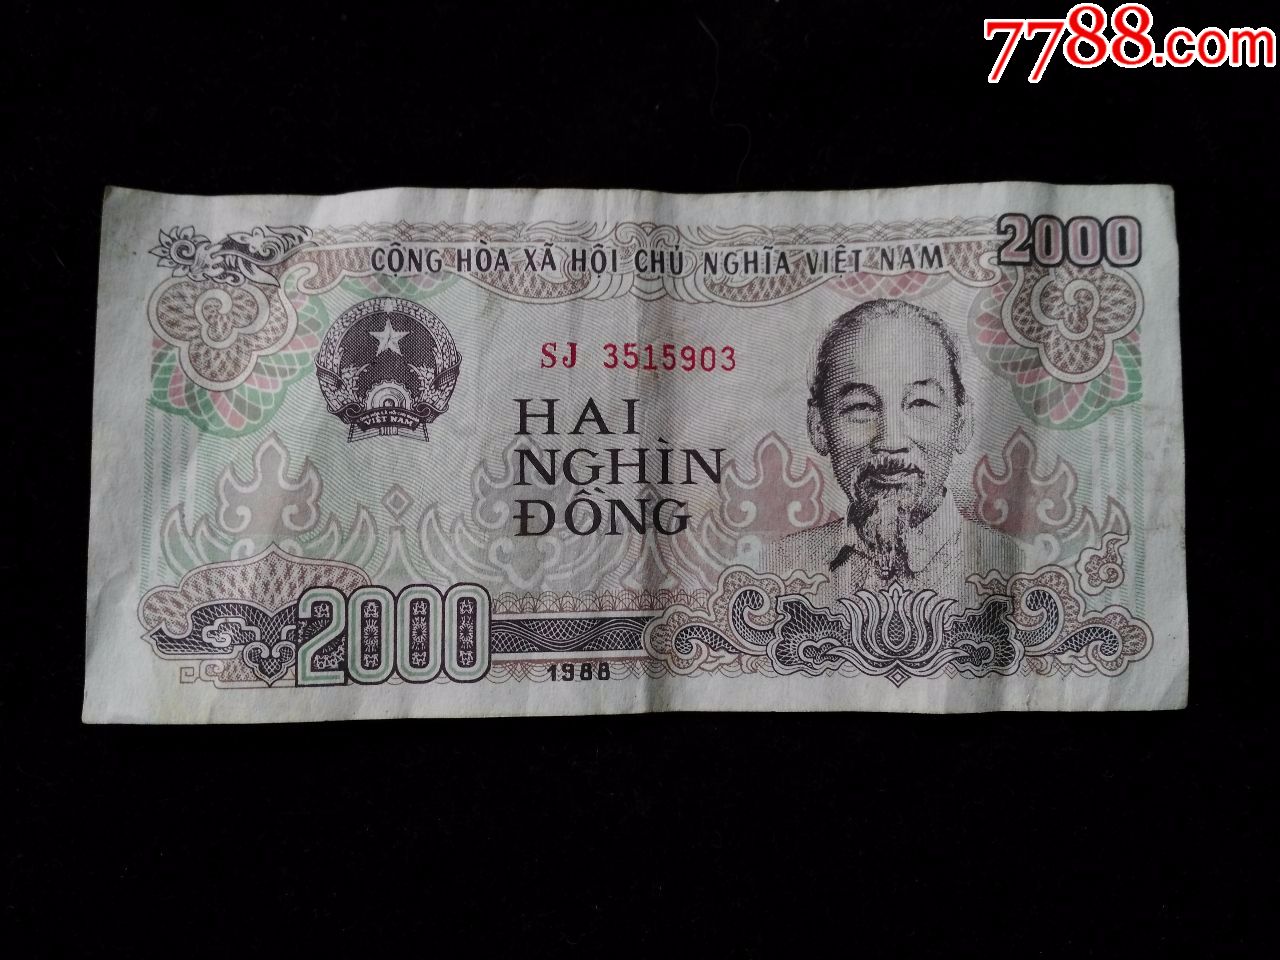 越南盾2000元图片图片